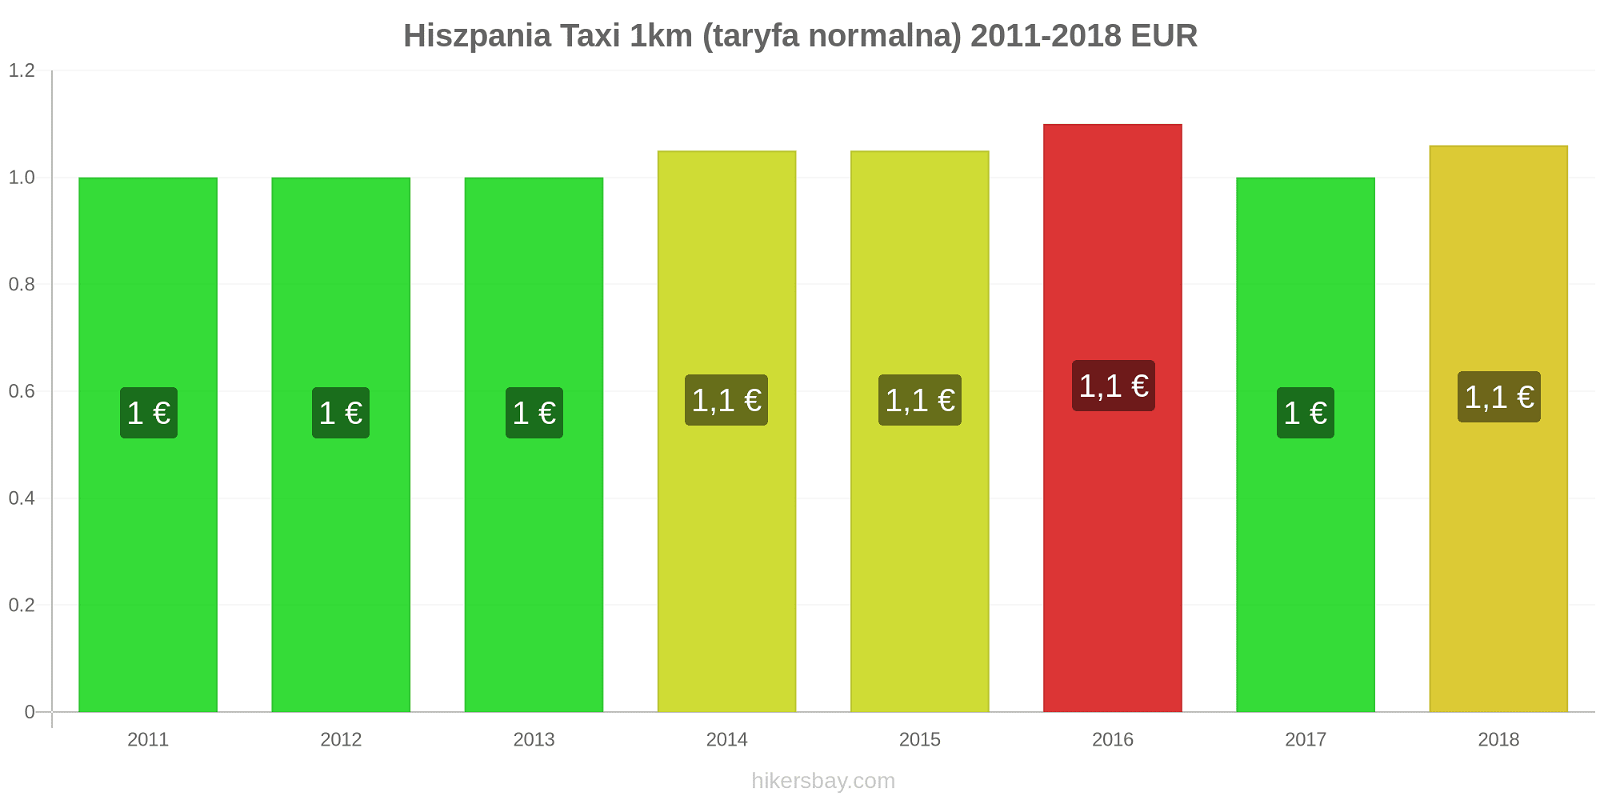 Hiszpania zmiany cen Taxi 1km (taryfa normalna) hikersbay.com